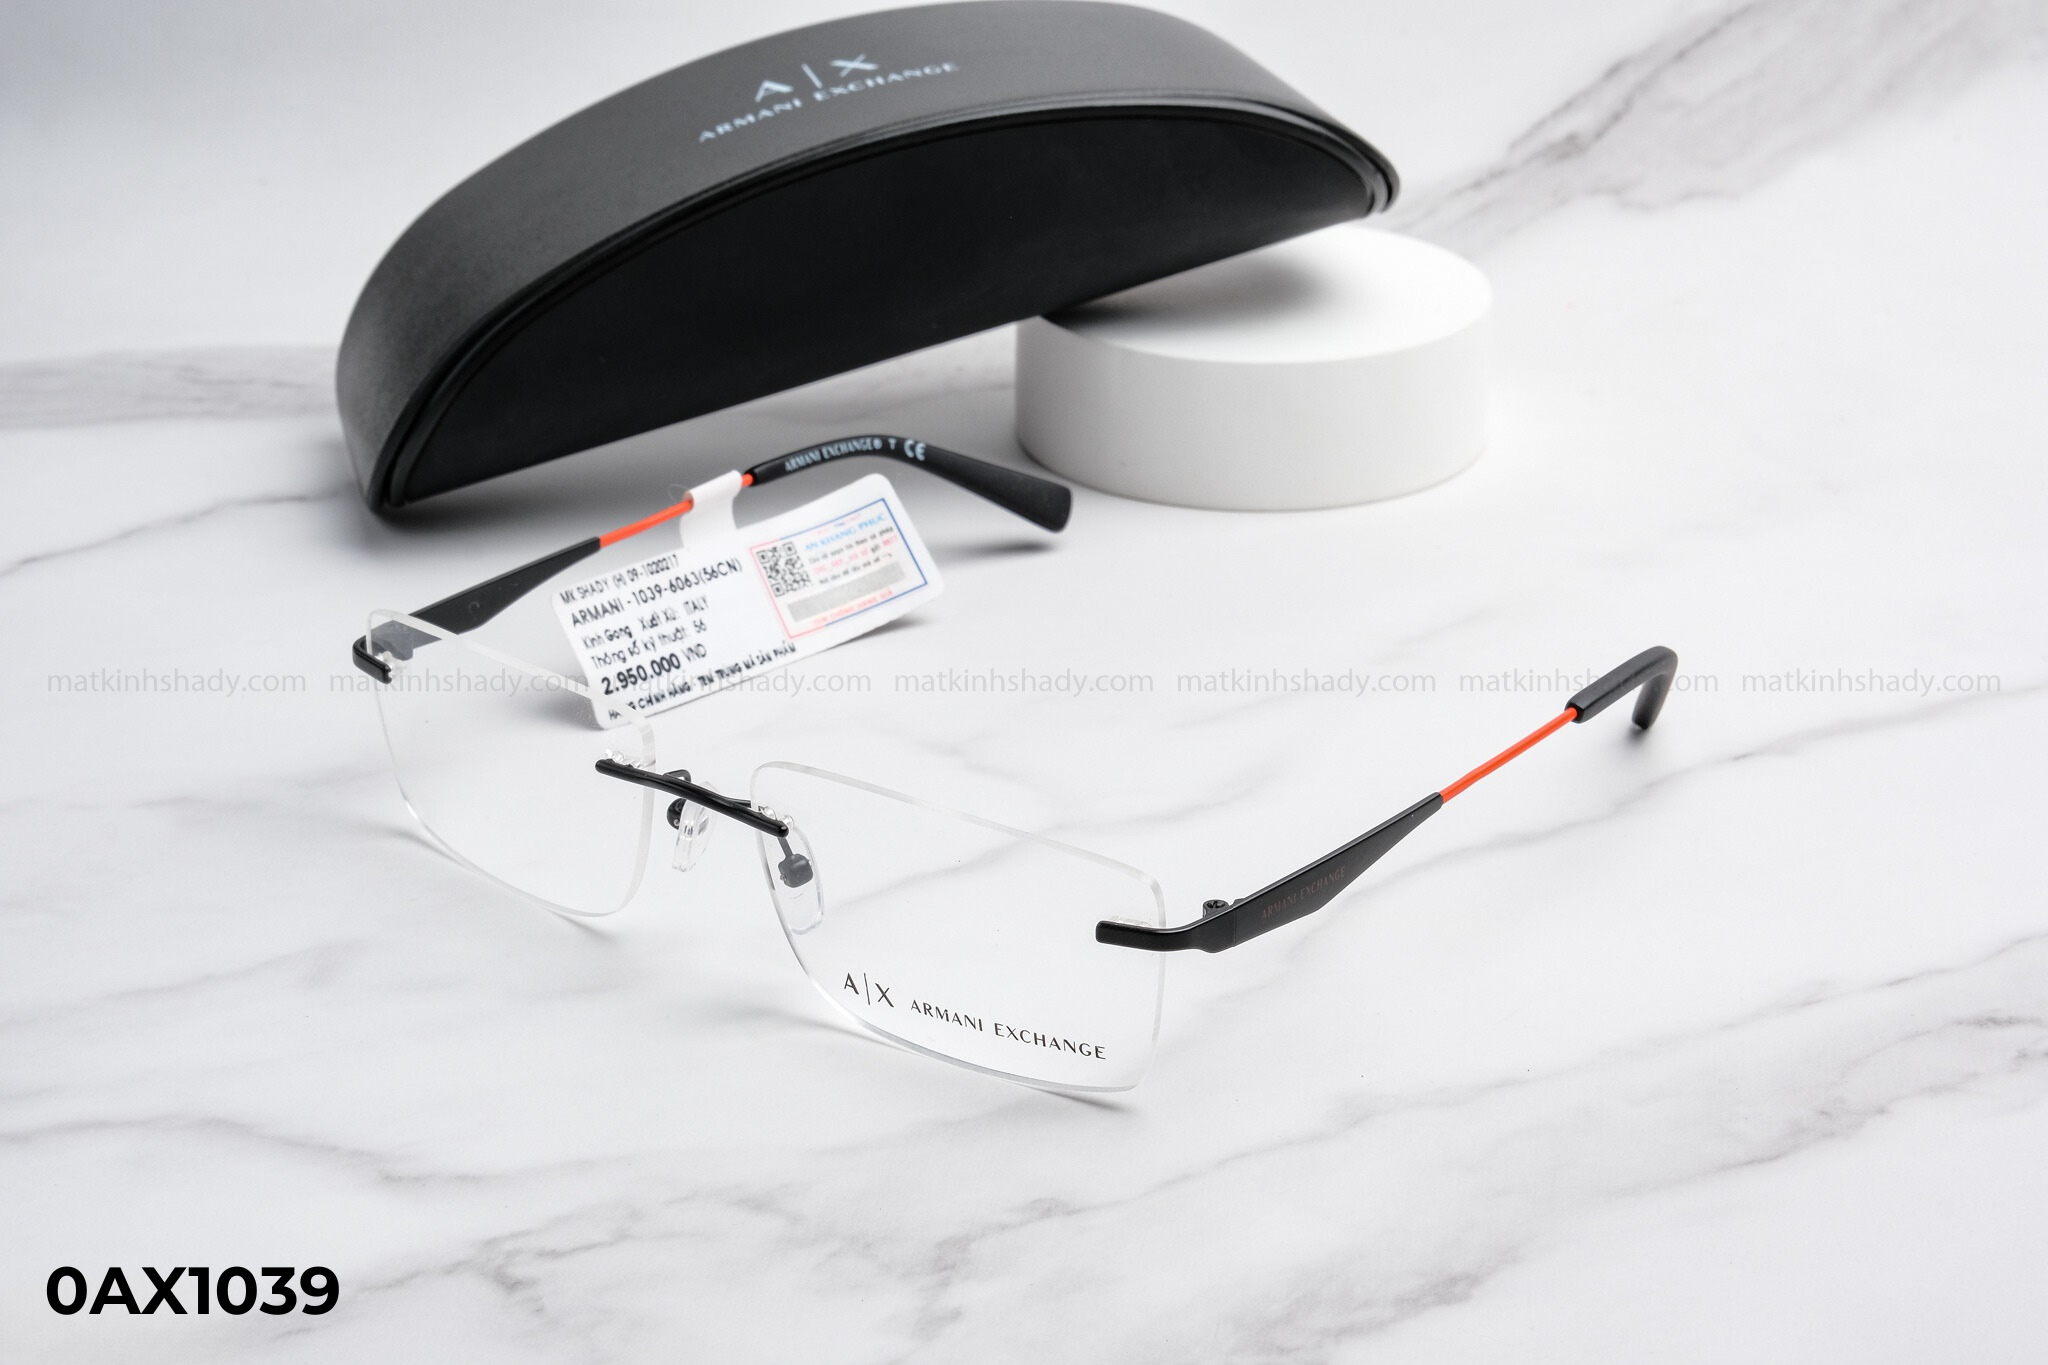  Armani Exchange Eyewear - Glasses - 0AX1039 